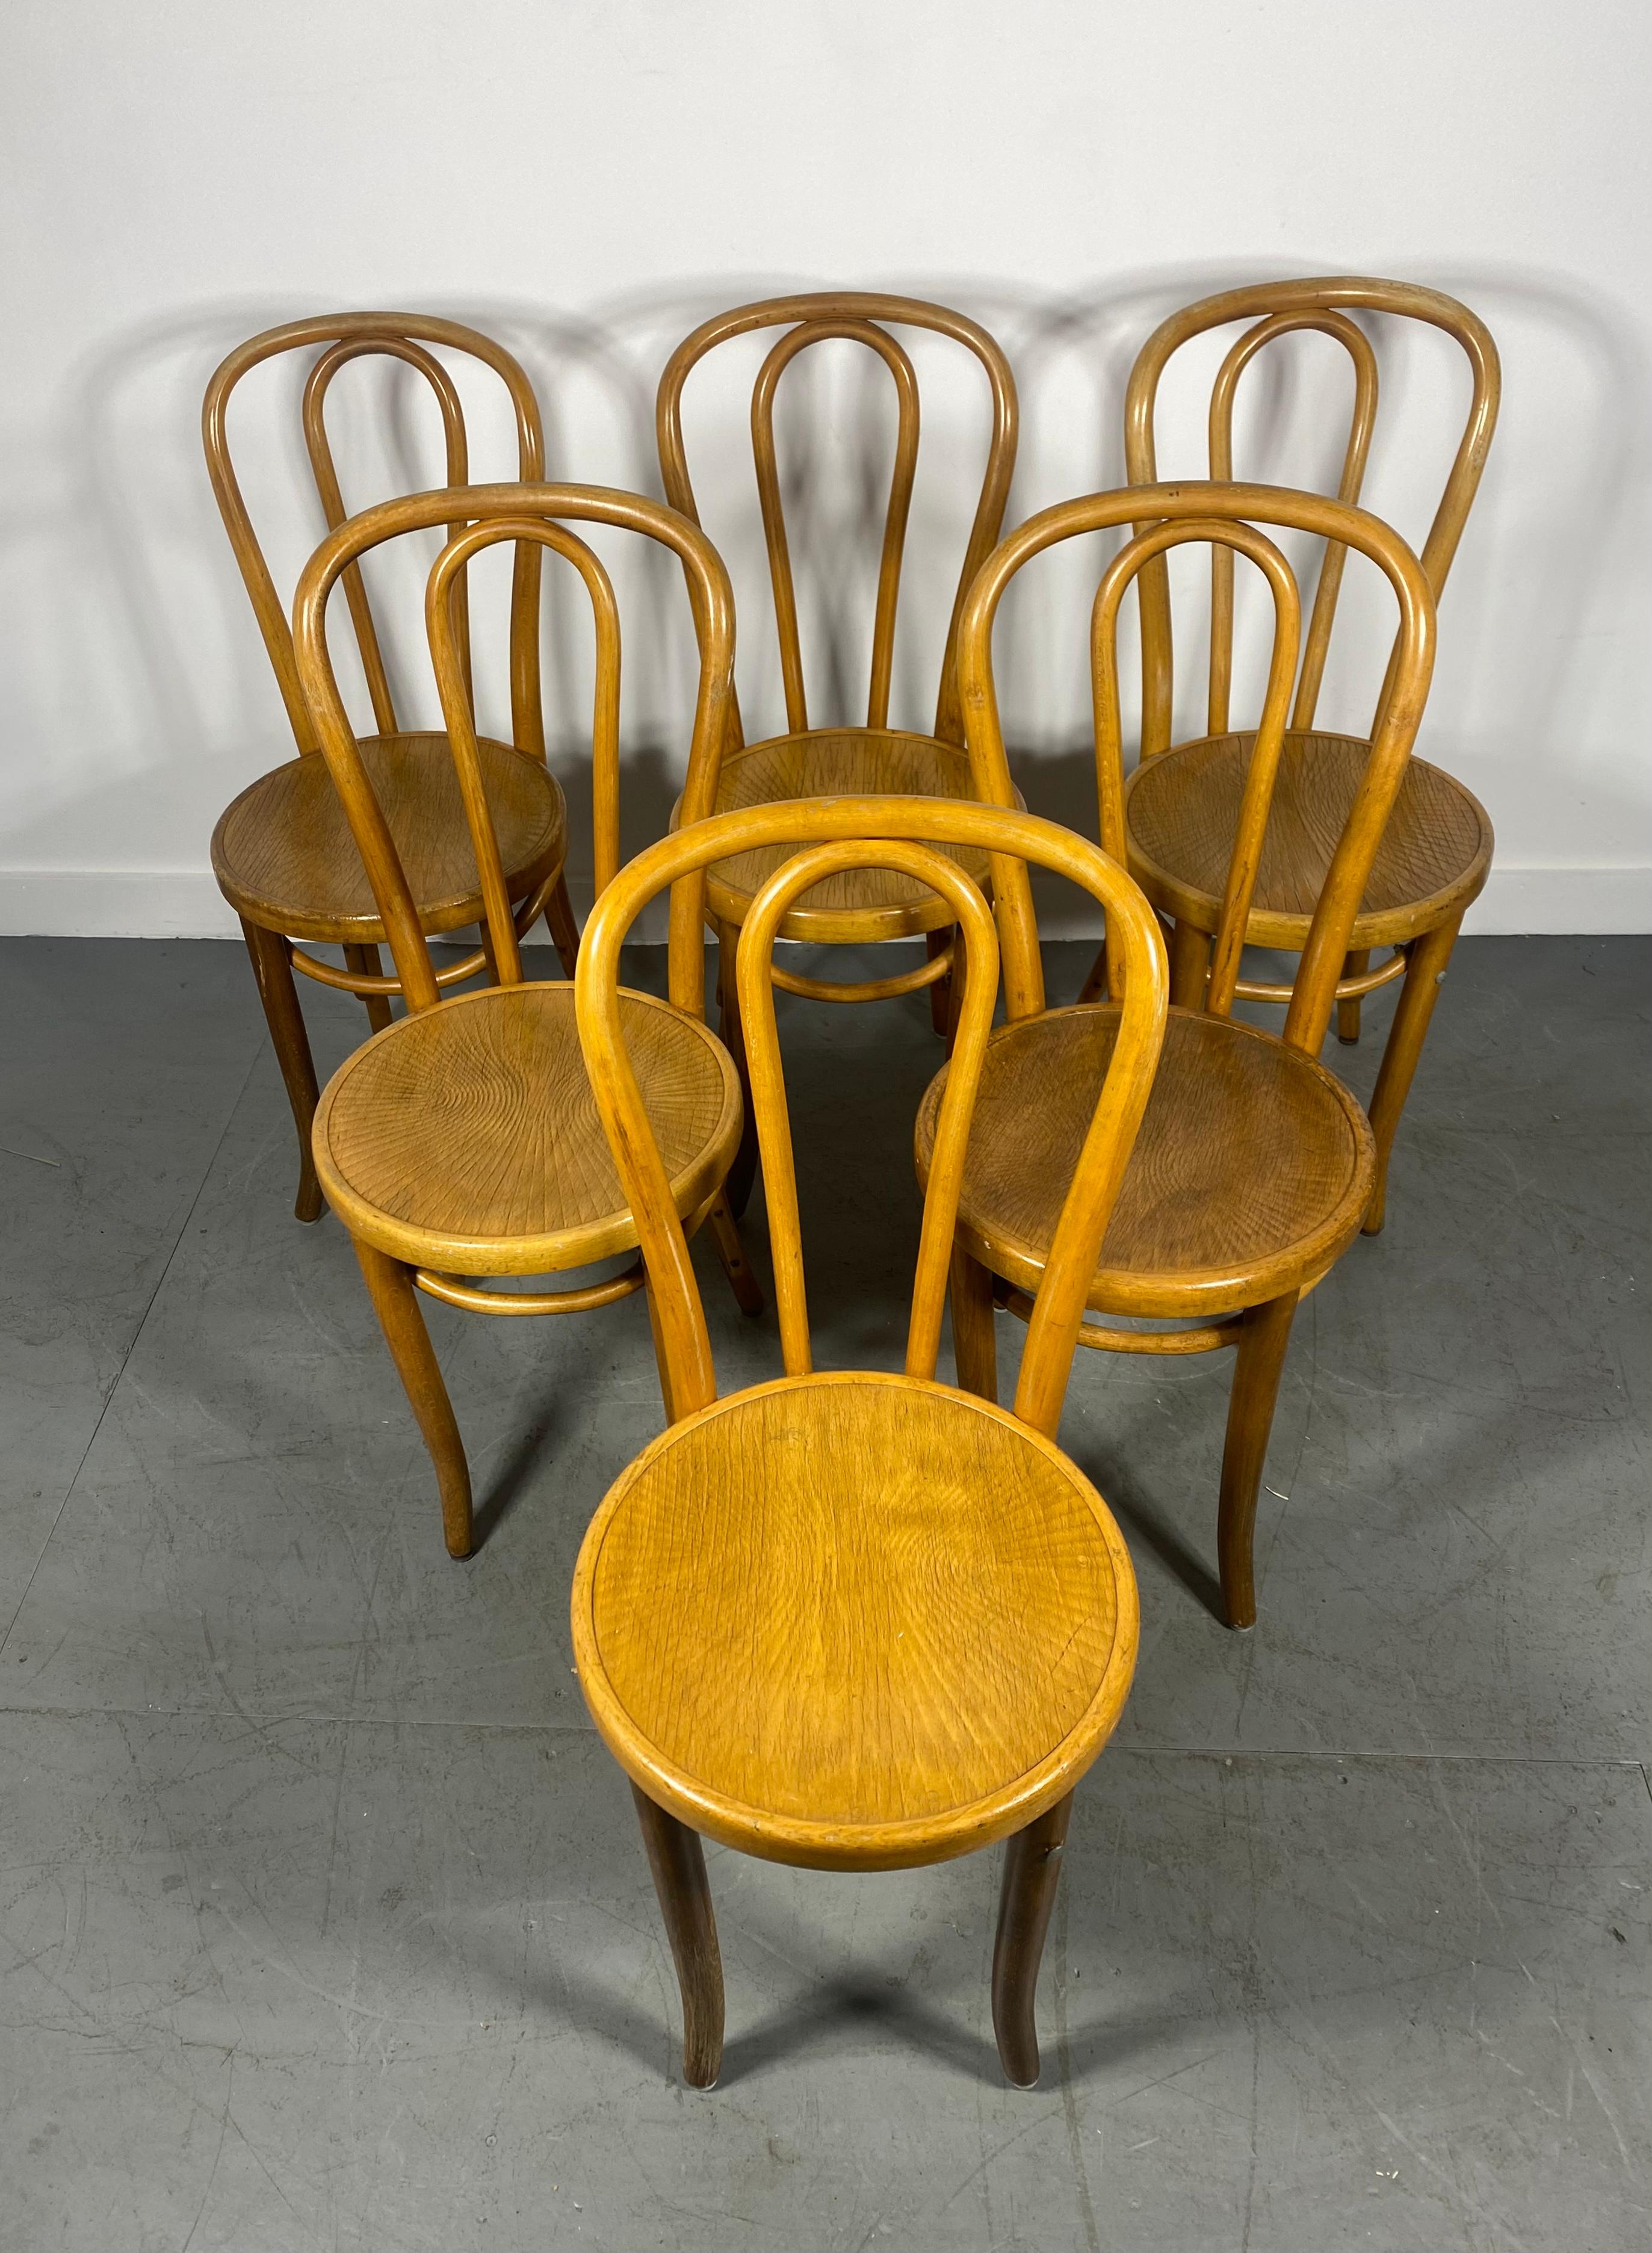 
Ensemble classique de 6 chaises de salle à manger /Bistro en bois de Thonet, modèle # 18.étiqueté Made in Czechoslovakia...Ensemble bien assorti,, Conserve sa finition d'origine blonde miel chaude,,merveilleuse patine.... Deux chaises renforcées